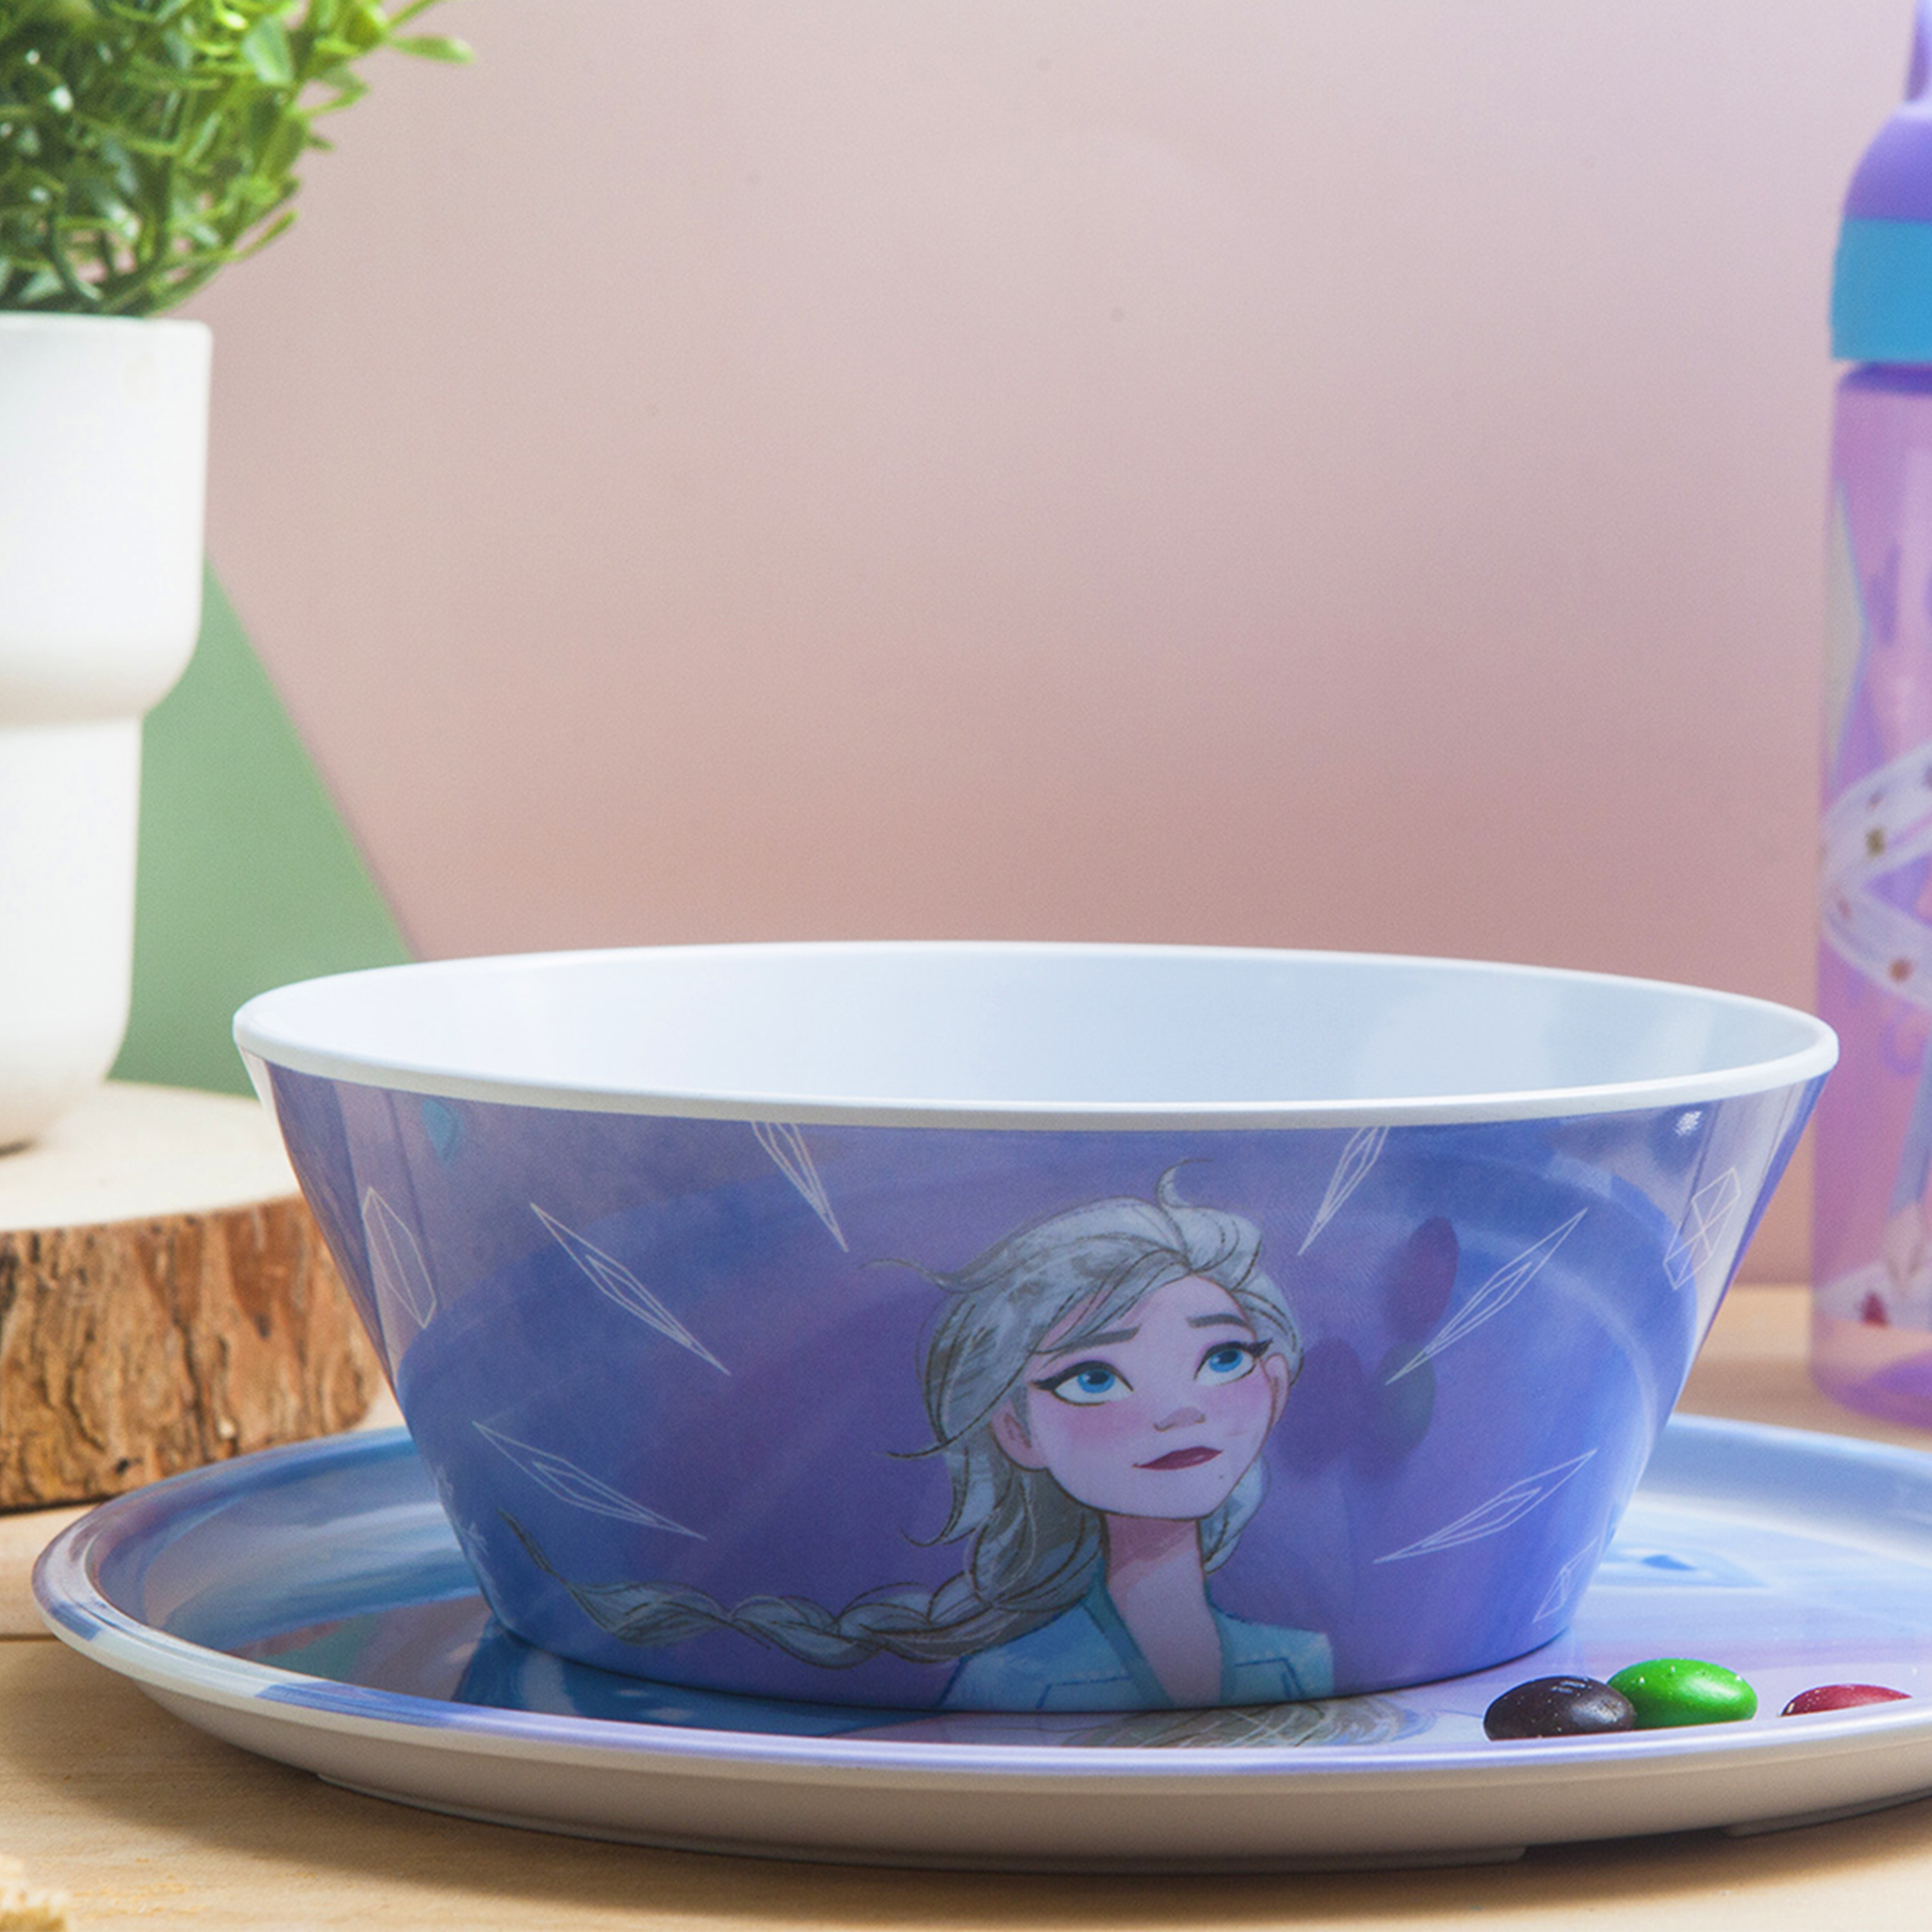 Disney Frozen 2 Movie Dinnerware Set, Anna and Elsa, 5-piece set slideshow image 3